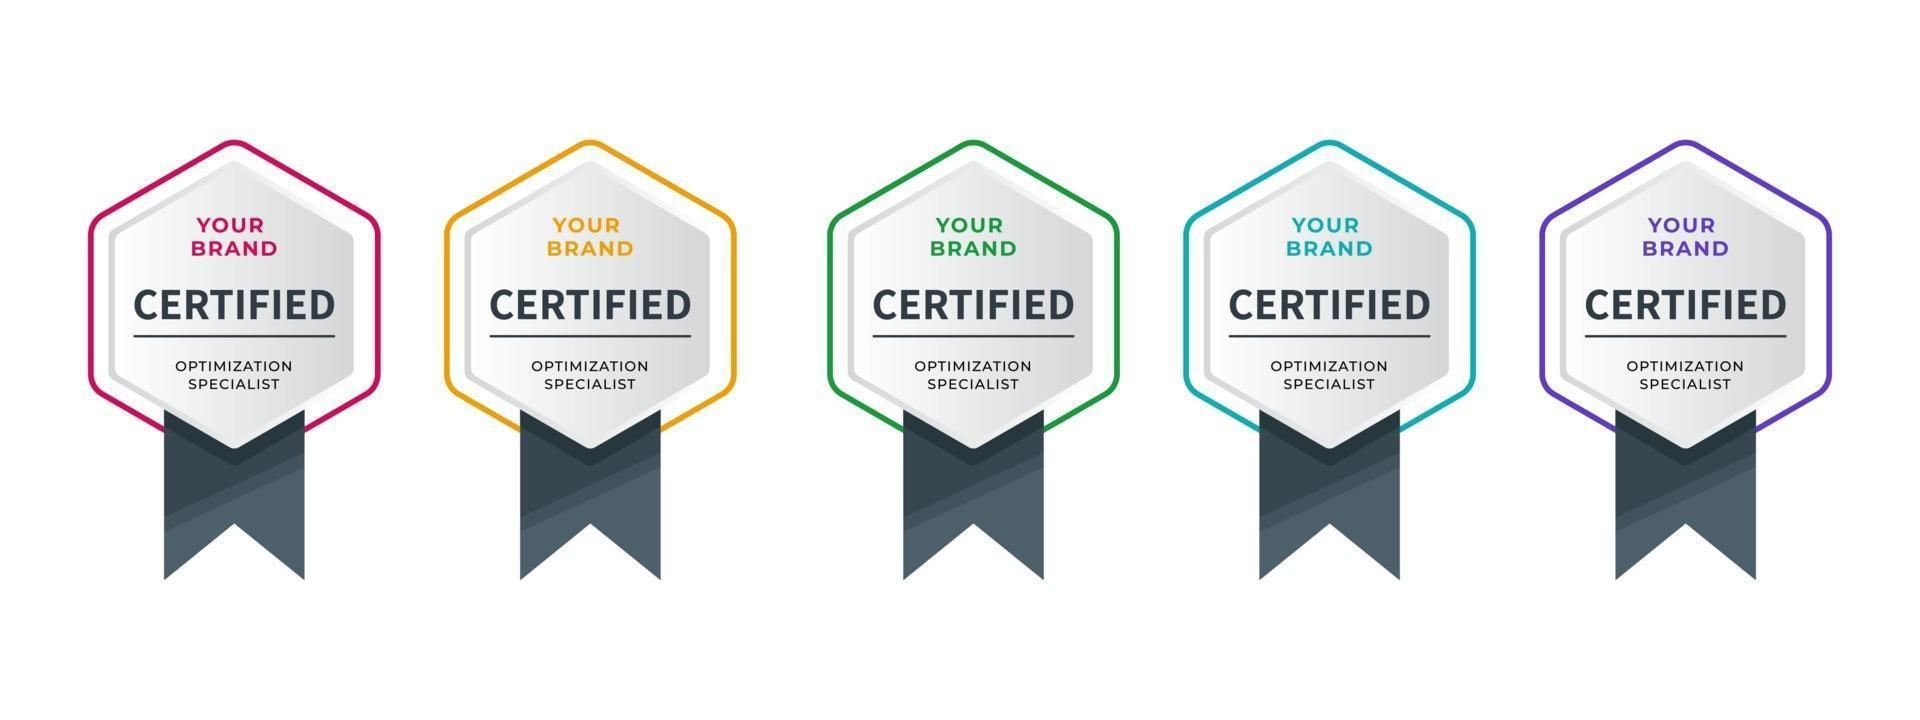 logomärke för certifikattekniker, analytiker, internet, data, konferens, etc. digital certifierad logotyp verifierad prestationer företag eller företag med hexagon band design. vektor illustration.